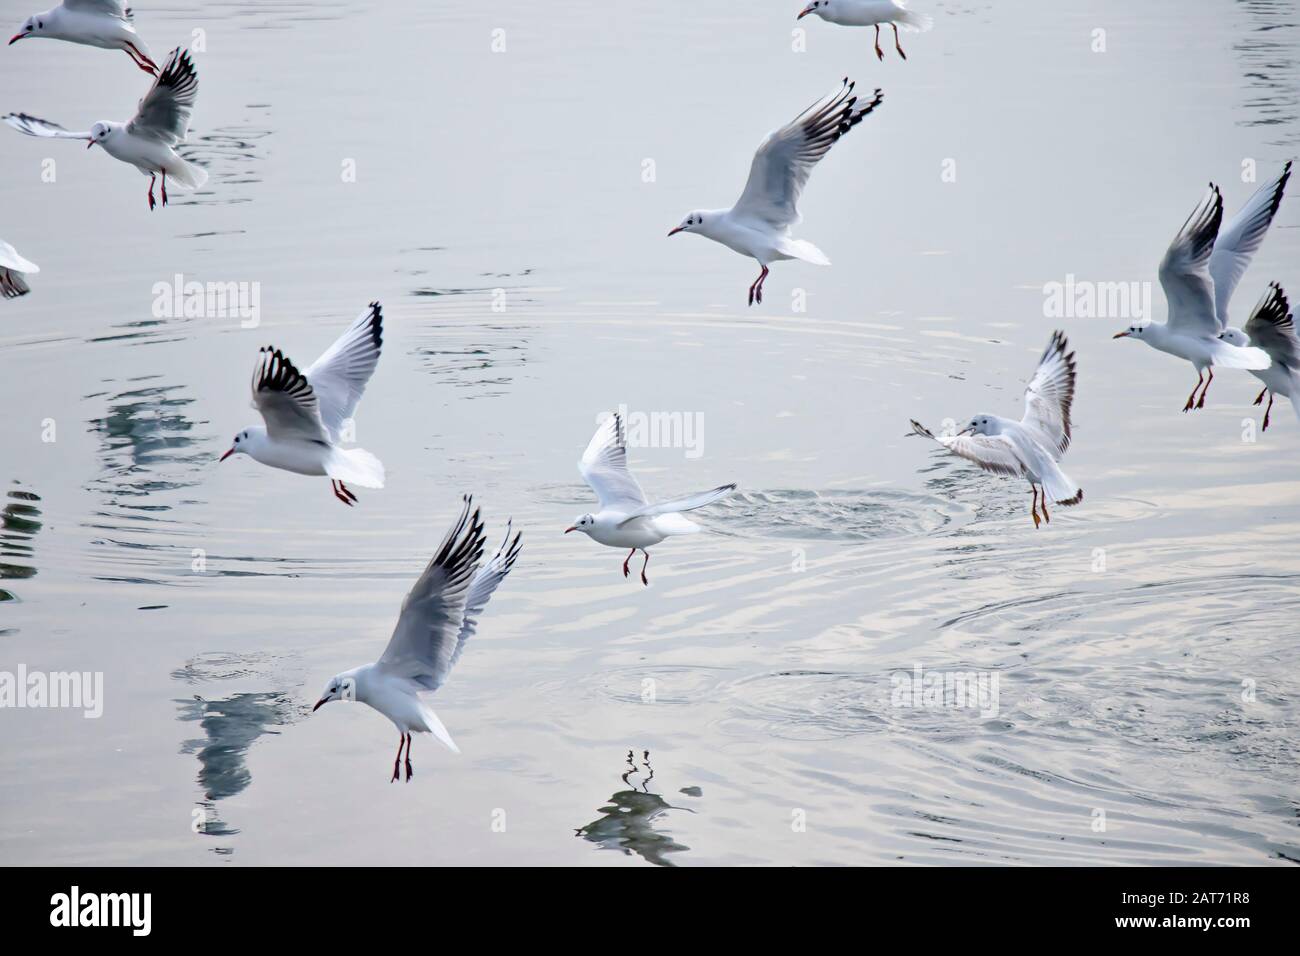 Gregge di gabbiani che volano sopra l'acqua in inverno, con riflessi e increspature Foto Stock